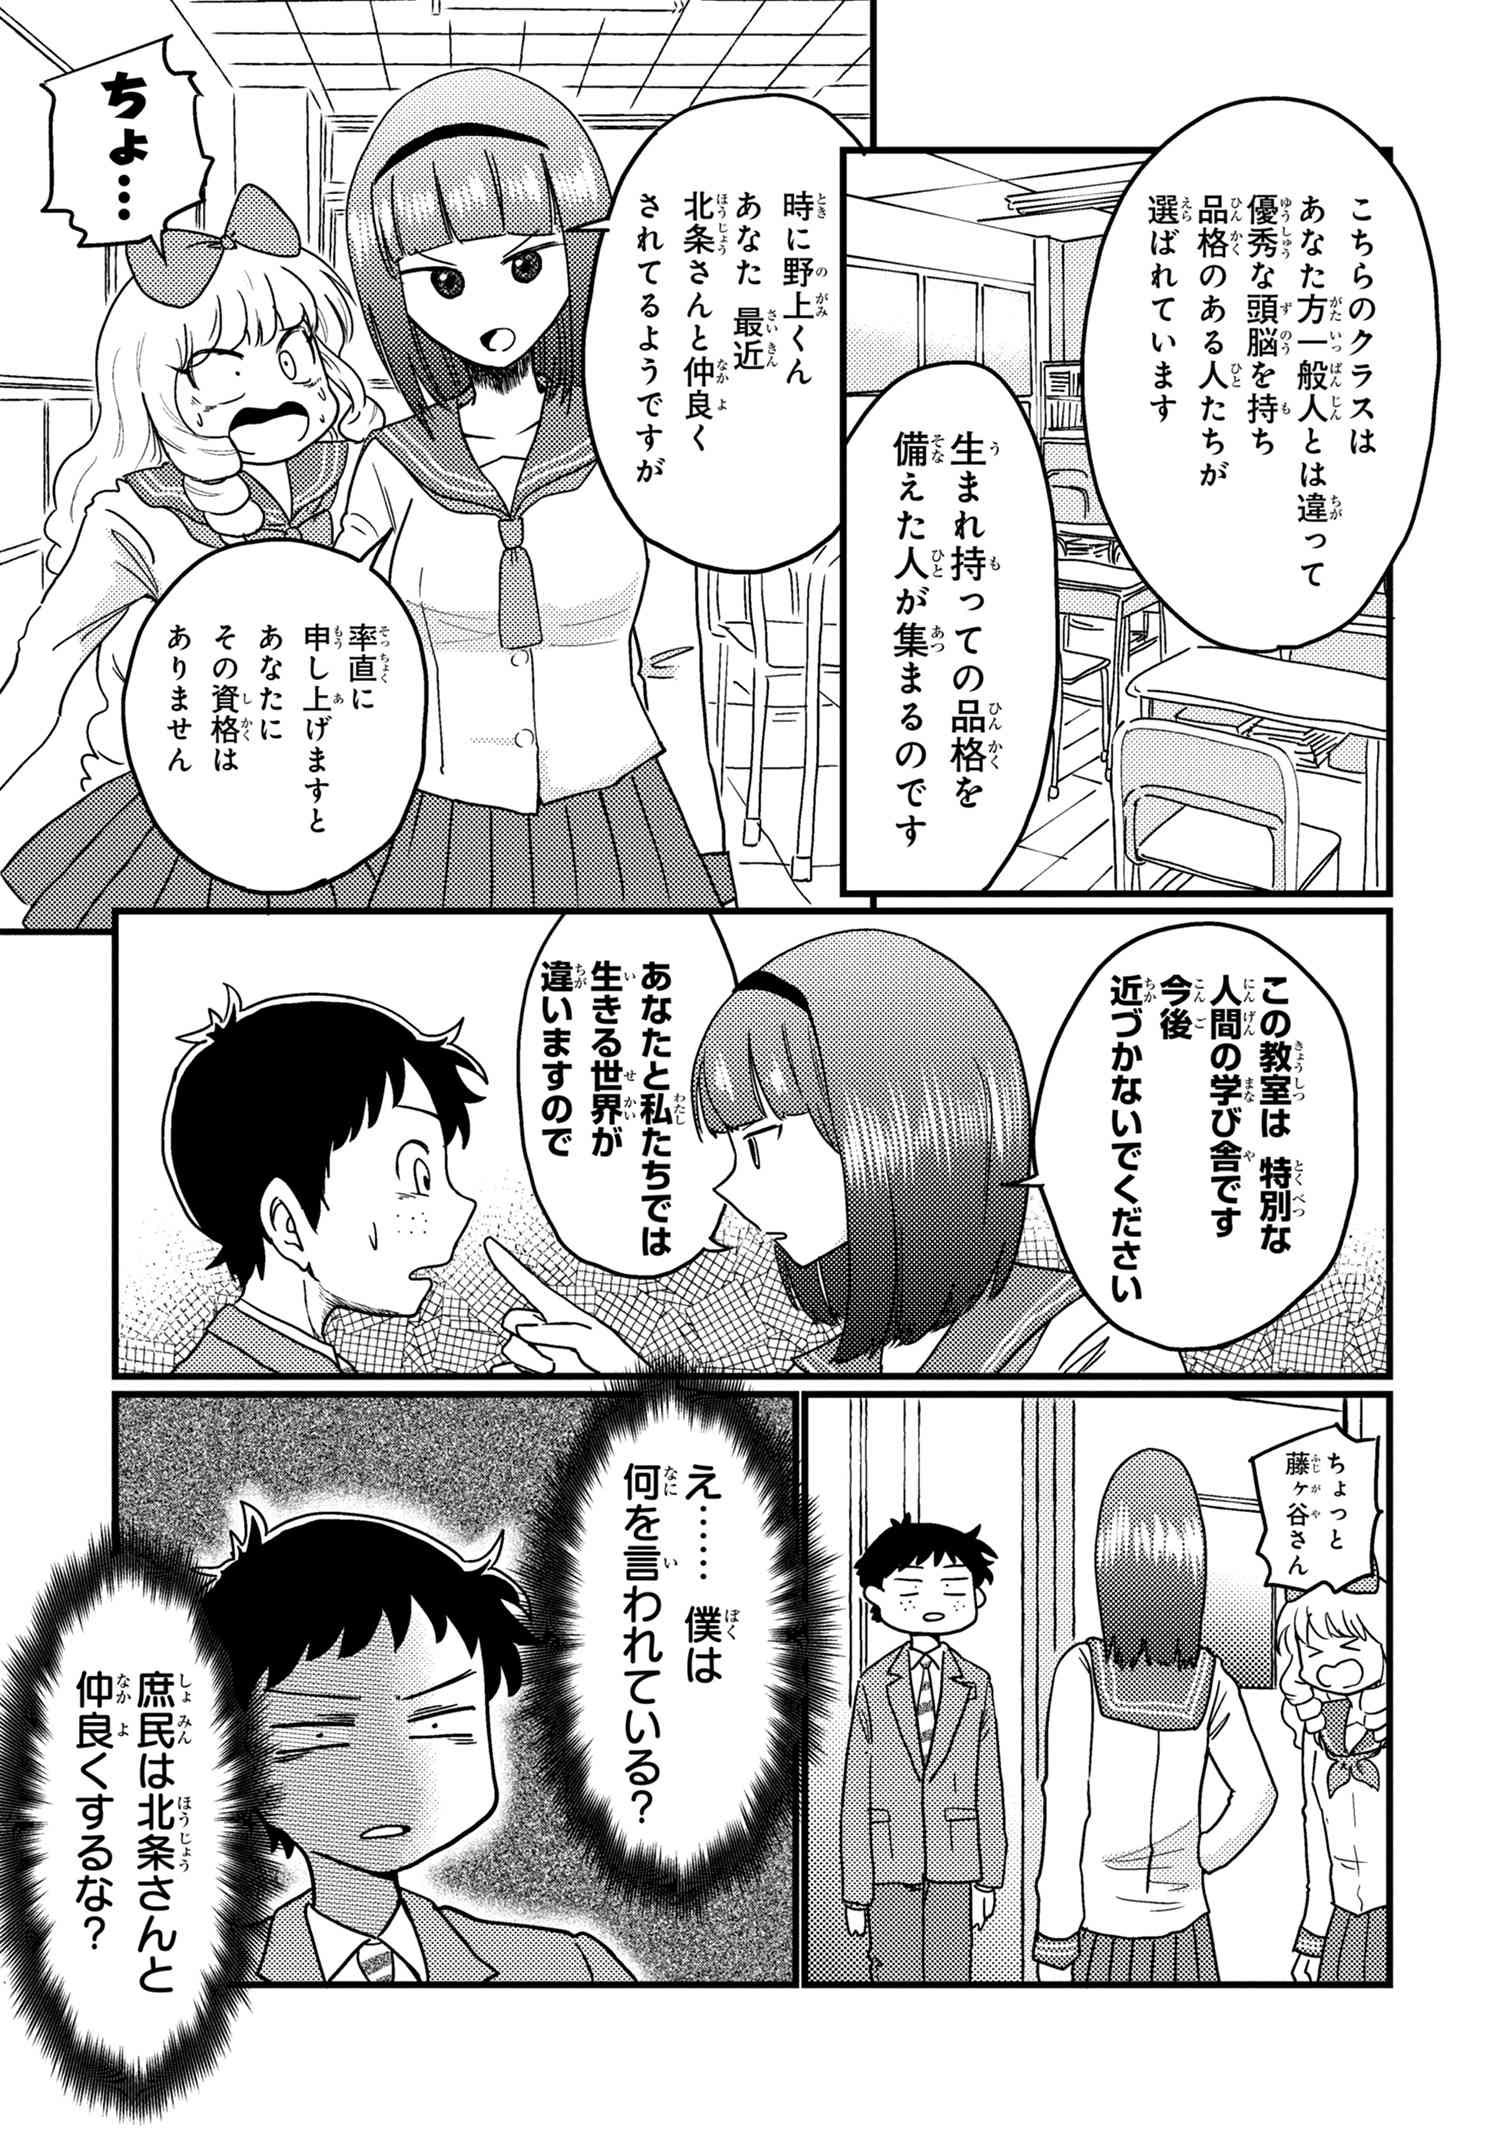 Houjou Urara no renai shousetsu o kaki nasai! - Chapter 11 - Page 5